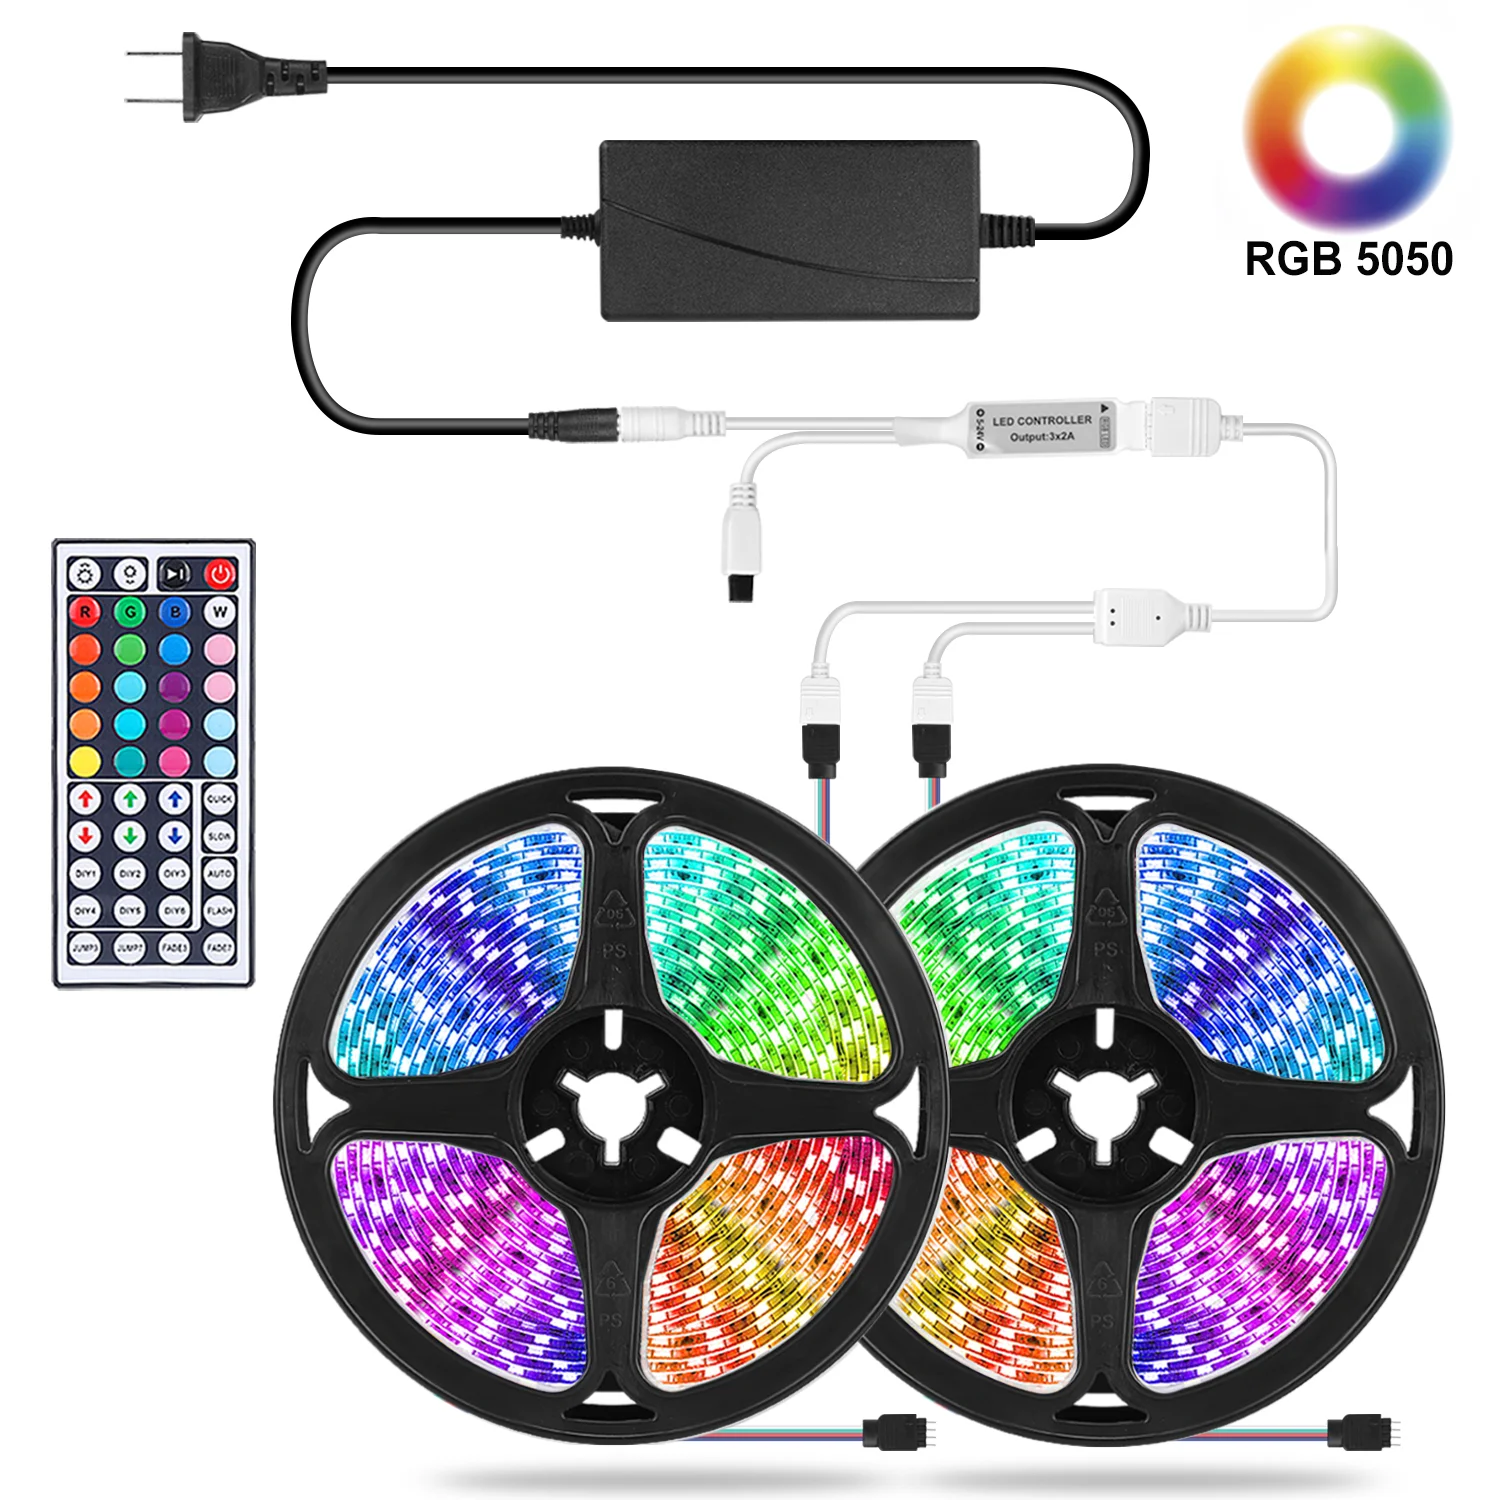 Цветная (RGB) Светодиодные ленты света WI FI светодиодный осветительные полосы 12V RGB ленты светодиодный лента SMD 5050 неоновые полосы Bluetooth Диодная лента подсветка для комнаты ТВ| |   | АлиЭкспресс - Компьютеры и техника